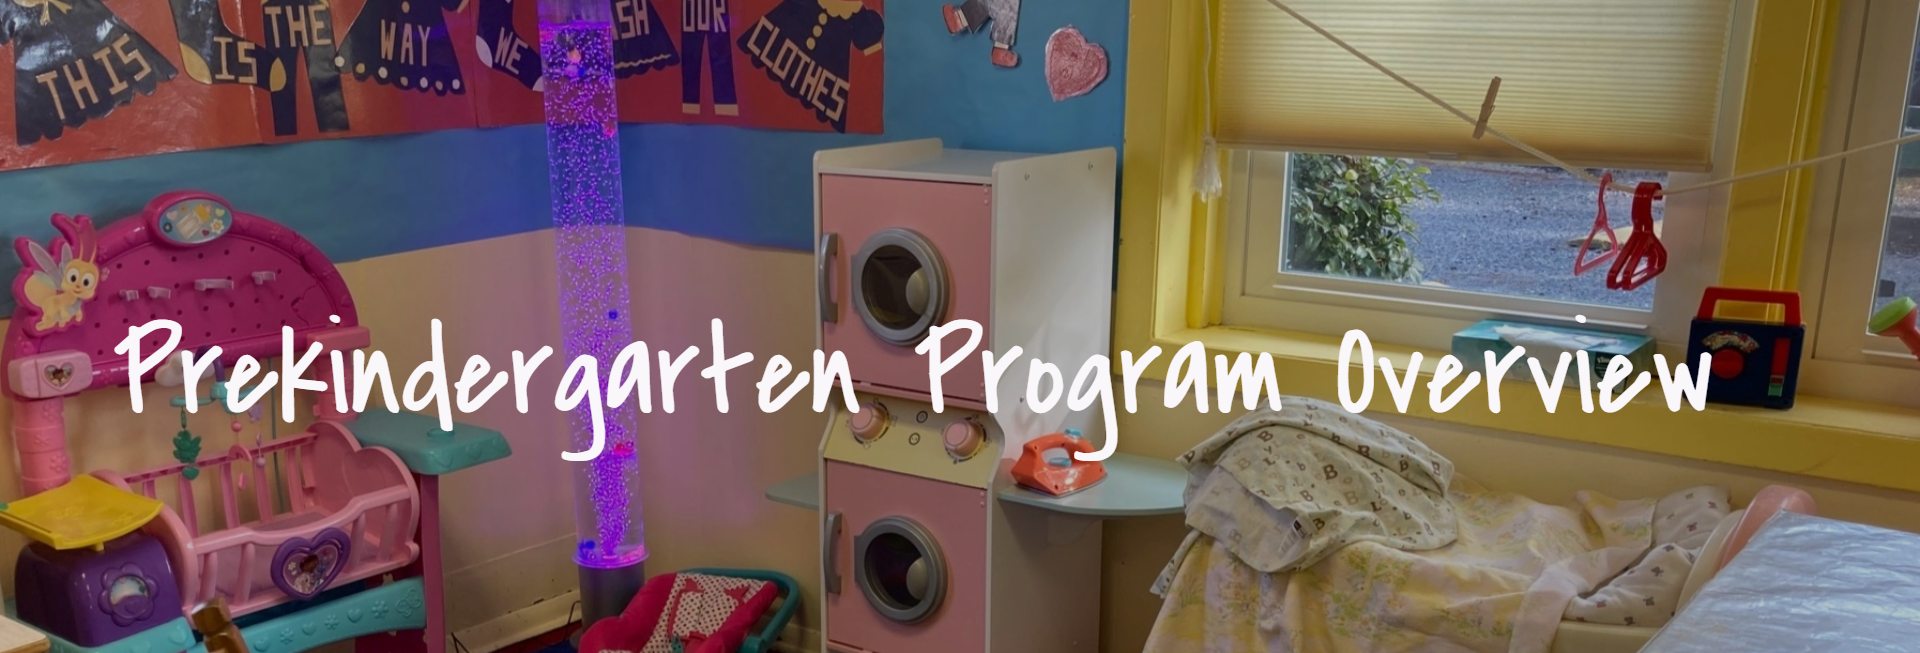 Prekindergarten Program Overview